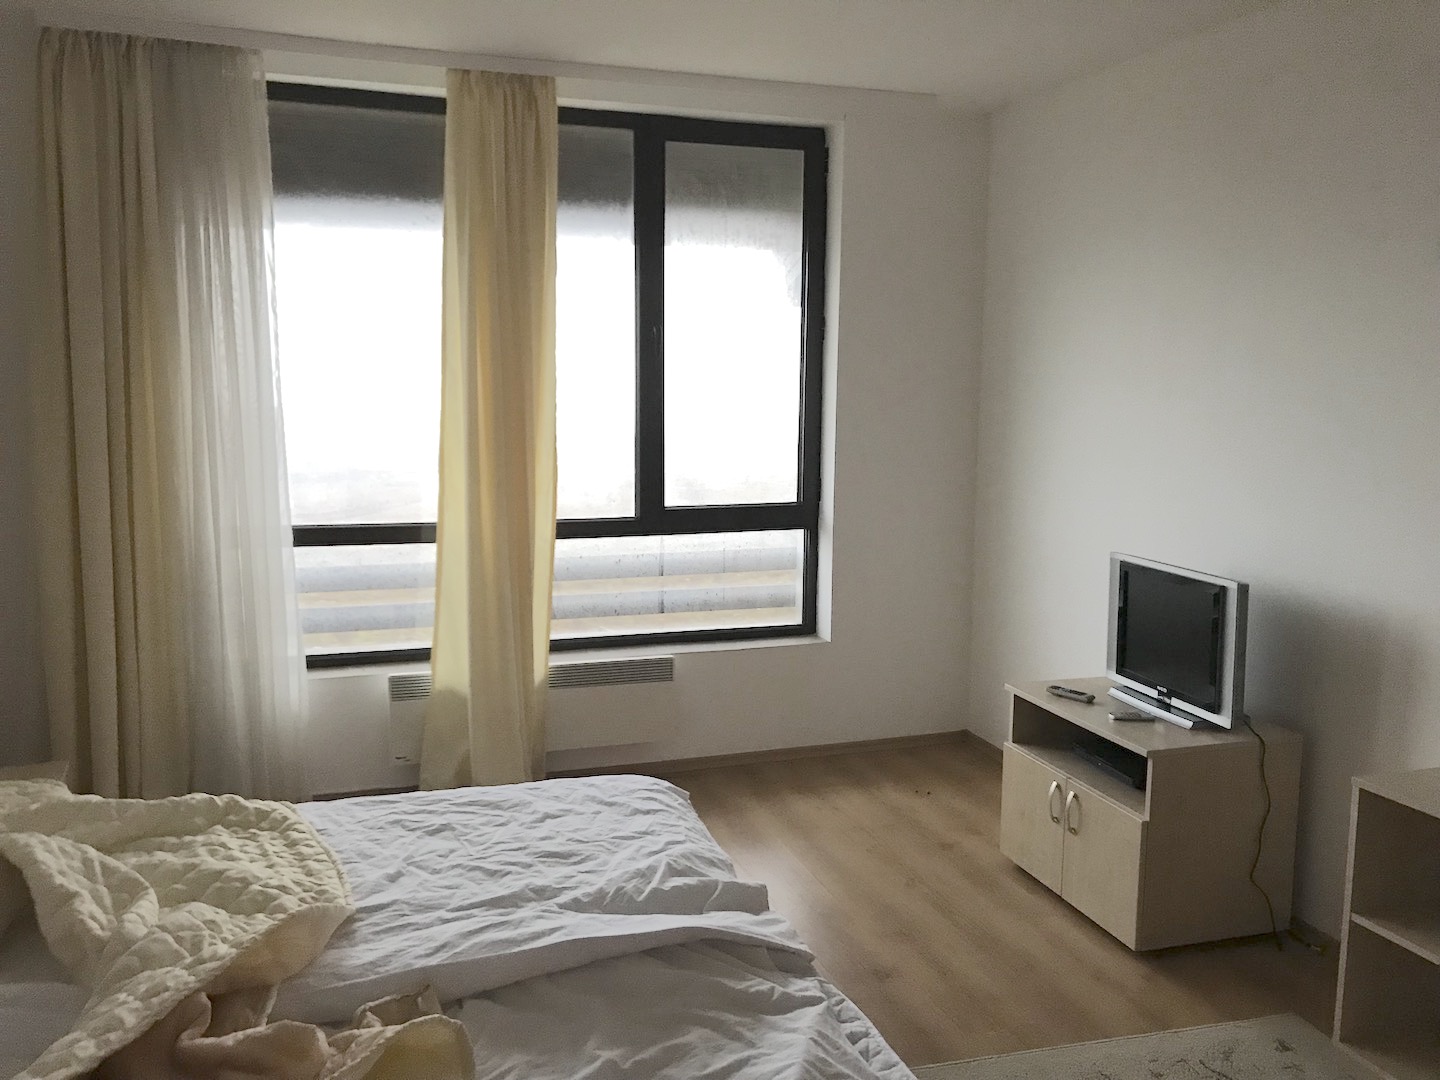 44,34sq.m studio apartment for sale in Bulgaria